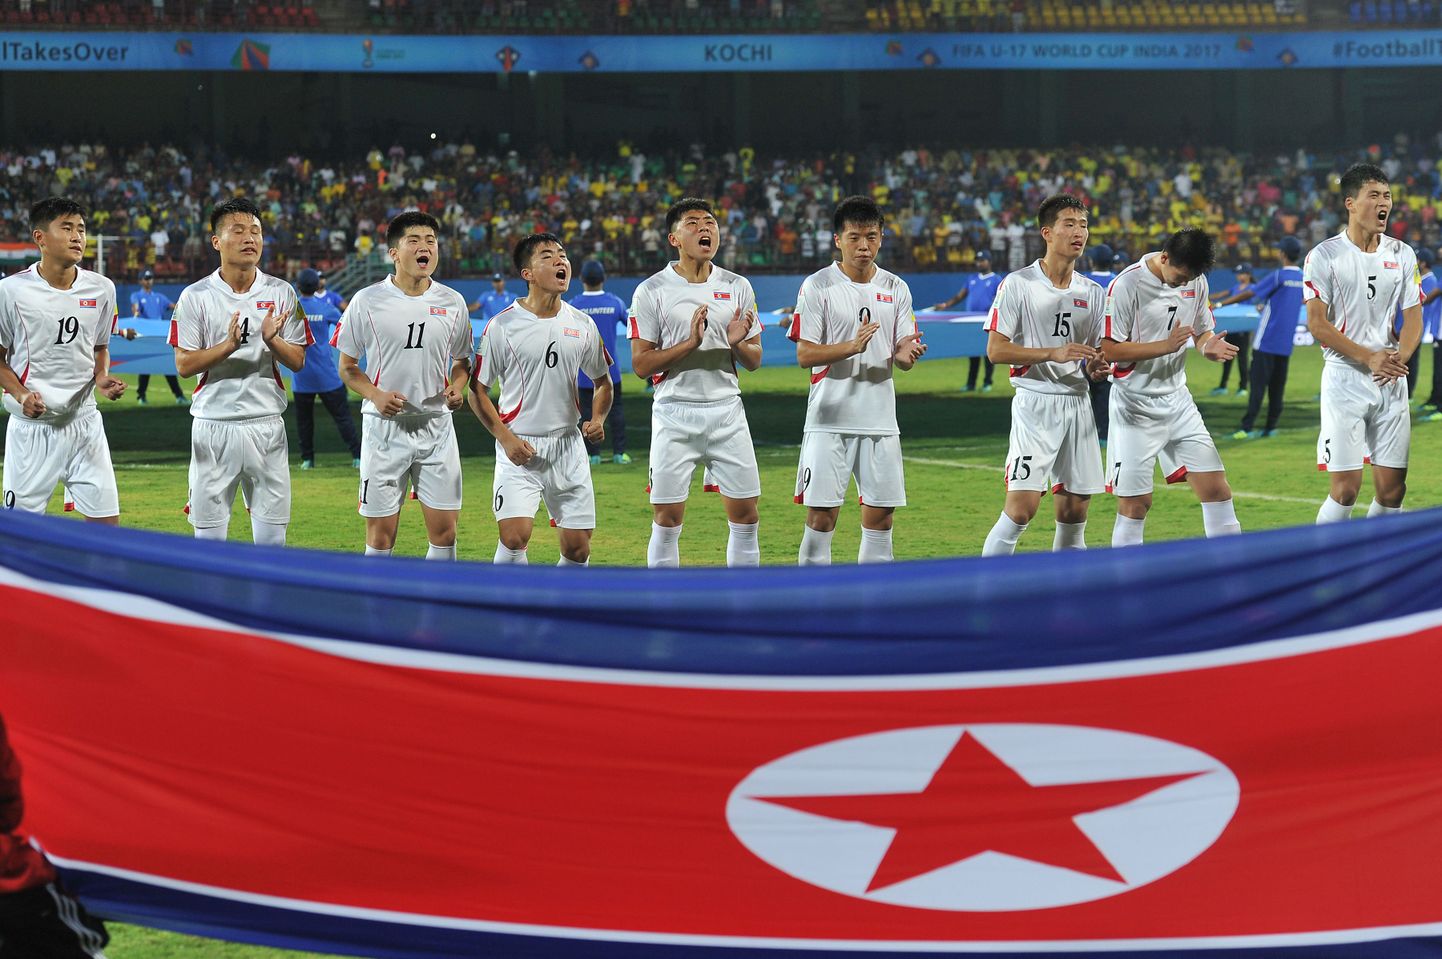 Põhja-Korea jalgpallikoondis